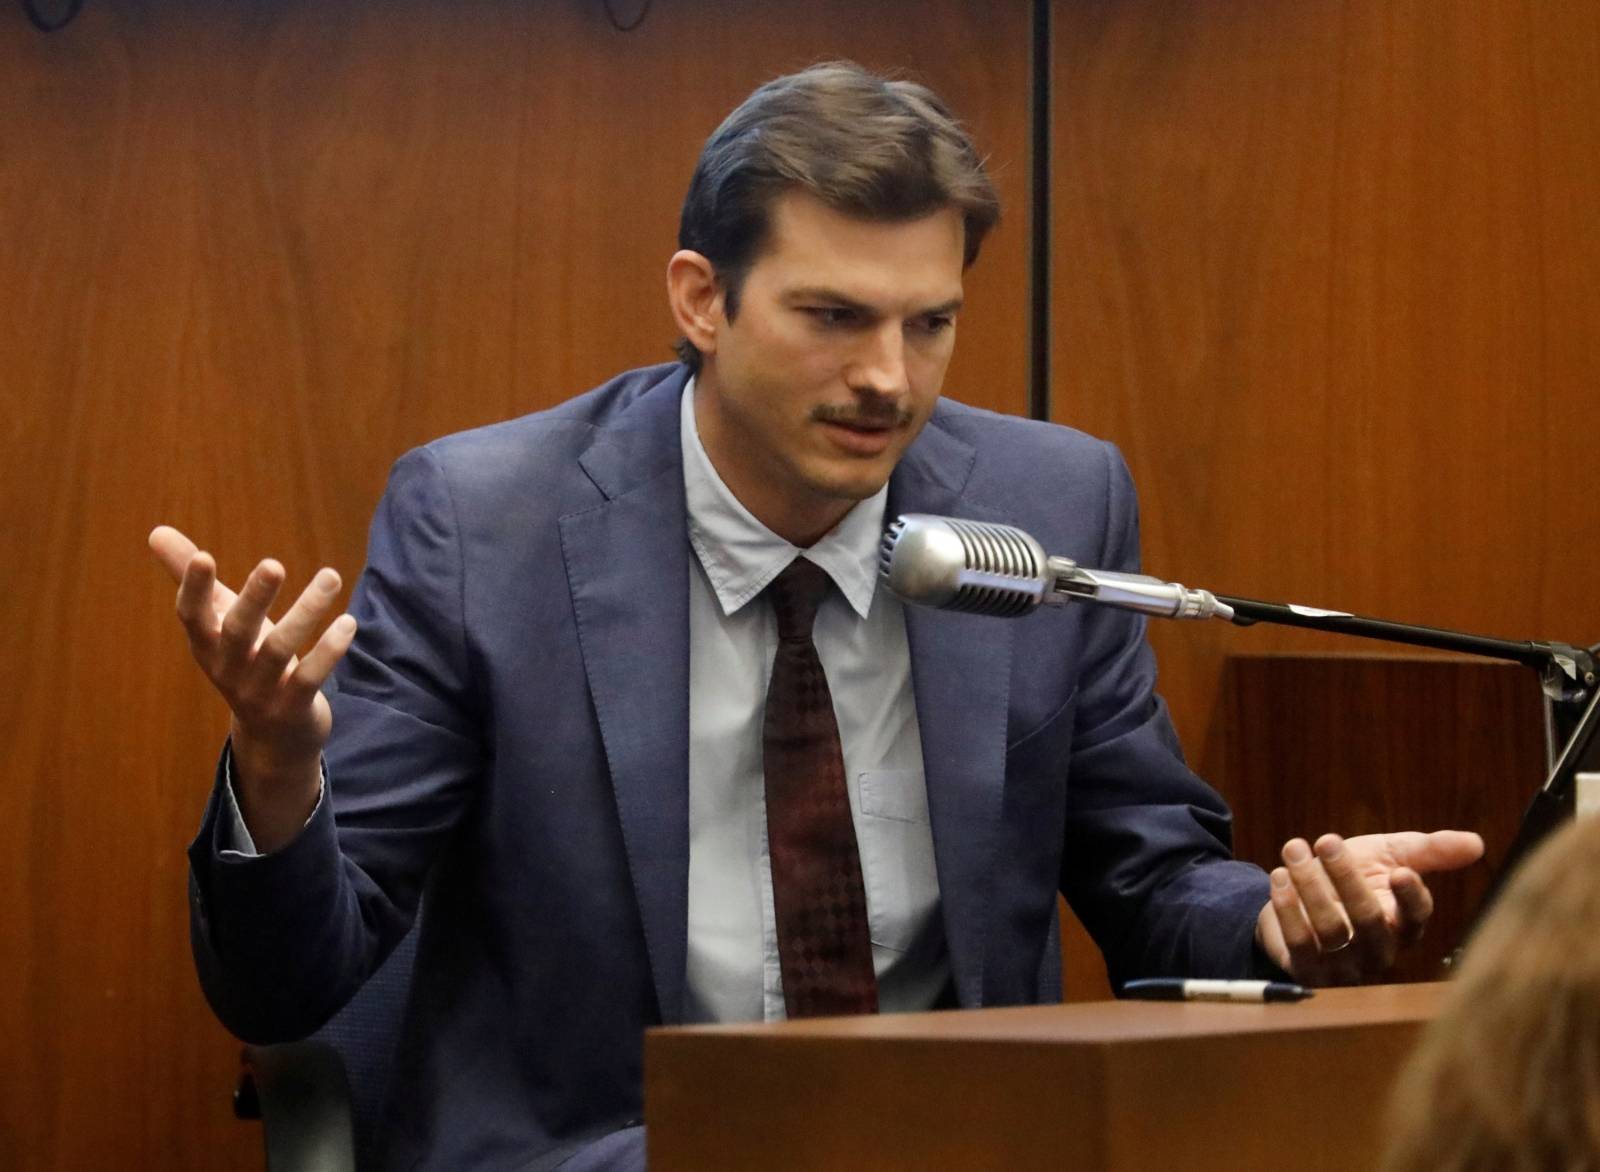 Actor Ashton Kutcher testifies at the murder trial of accused Serial killer Michael Thomas Gargiulo in Los Angeles